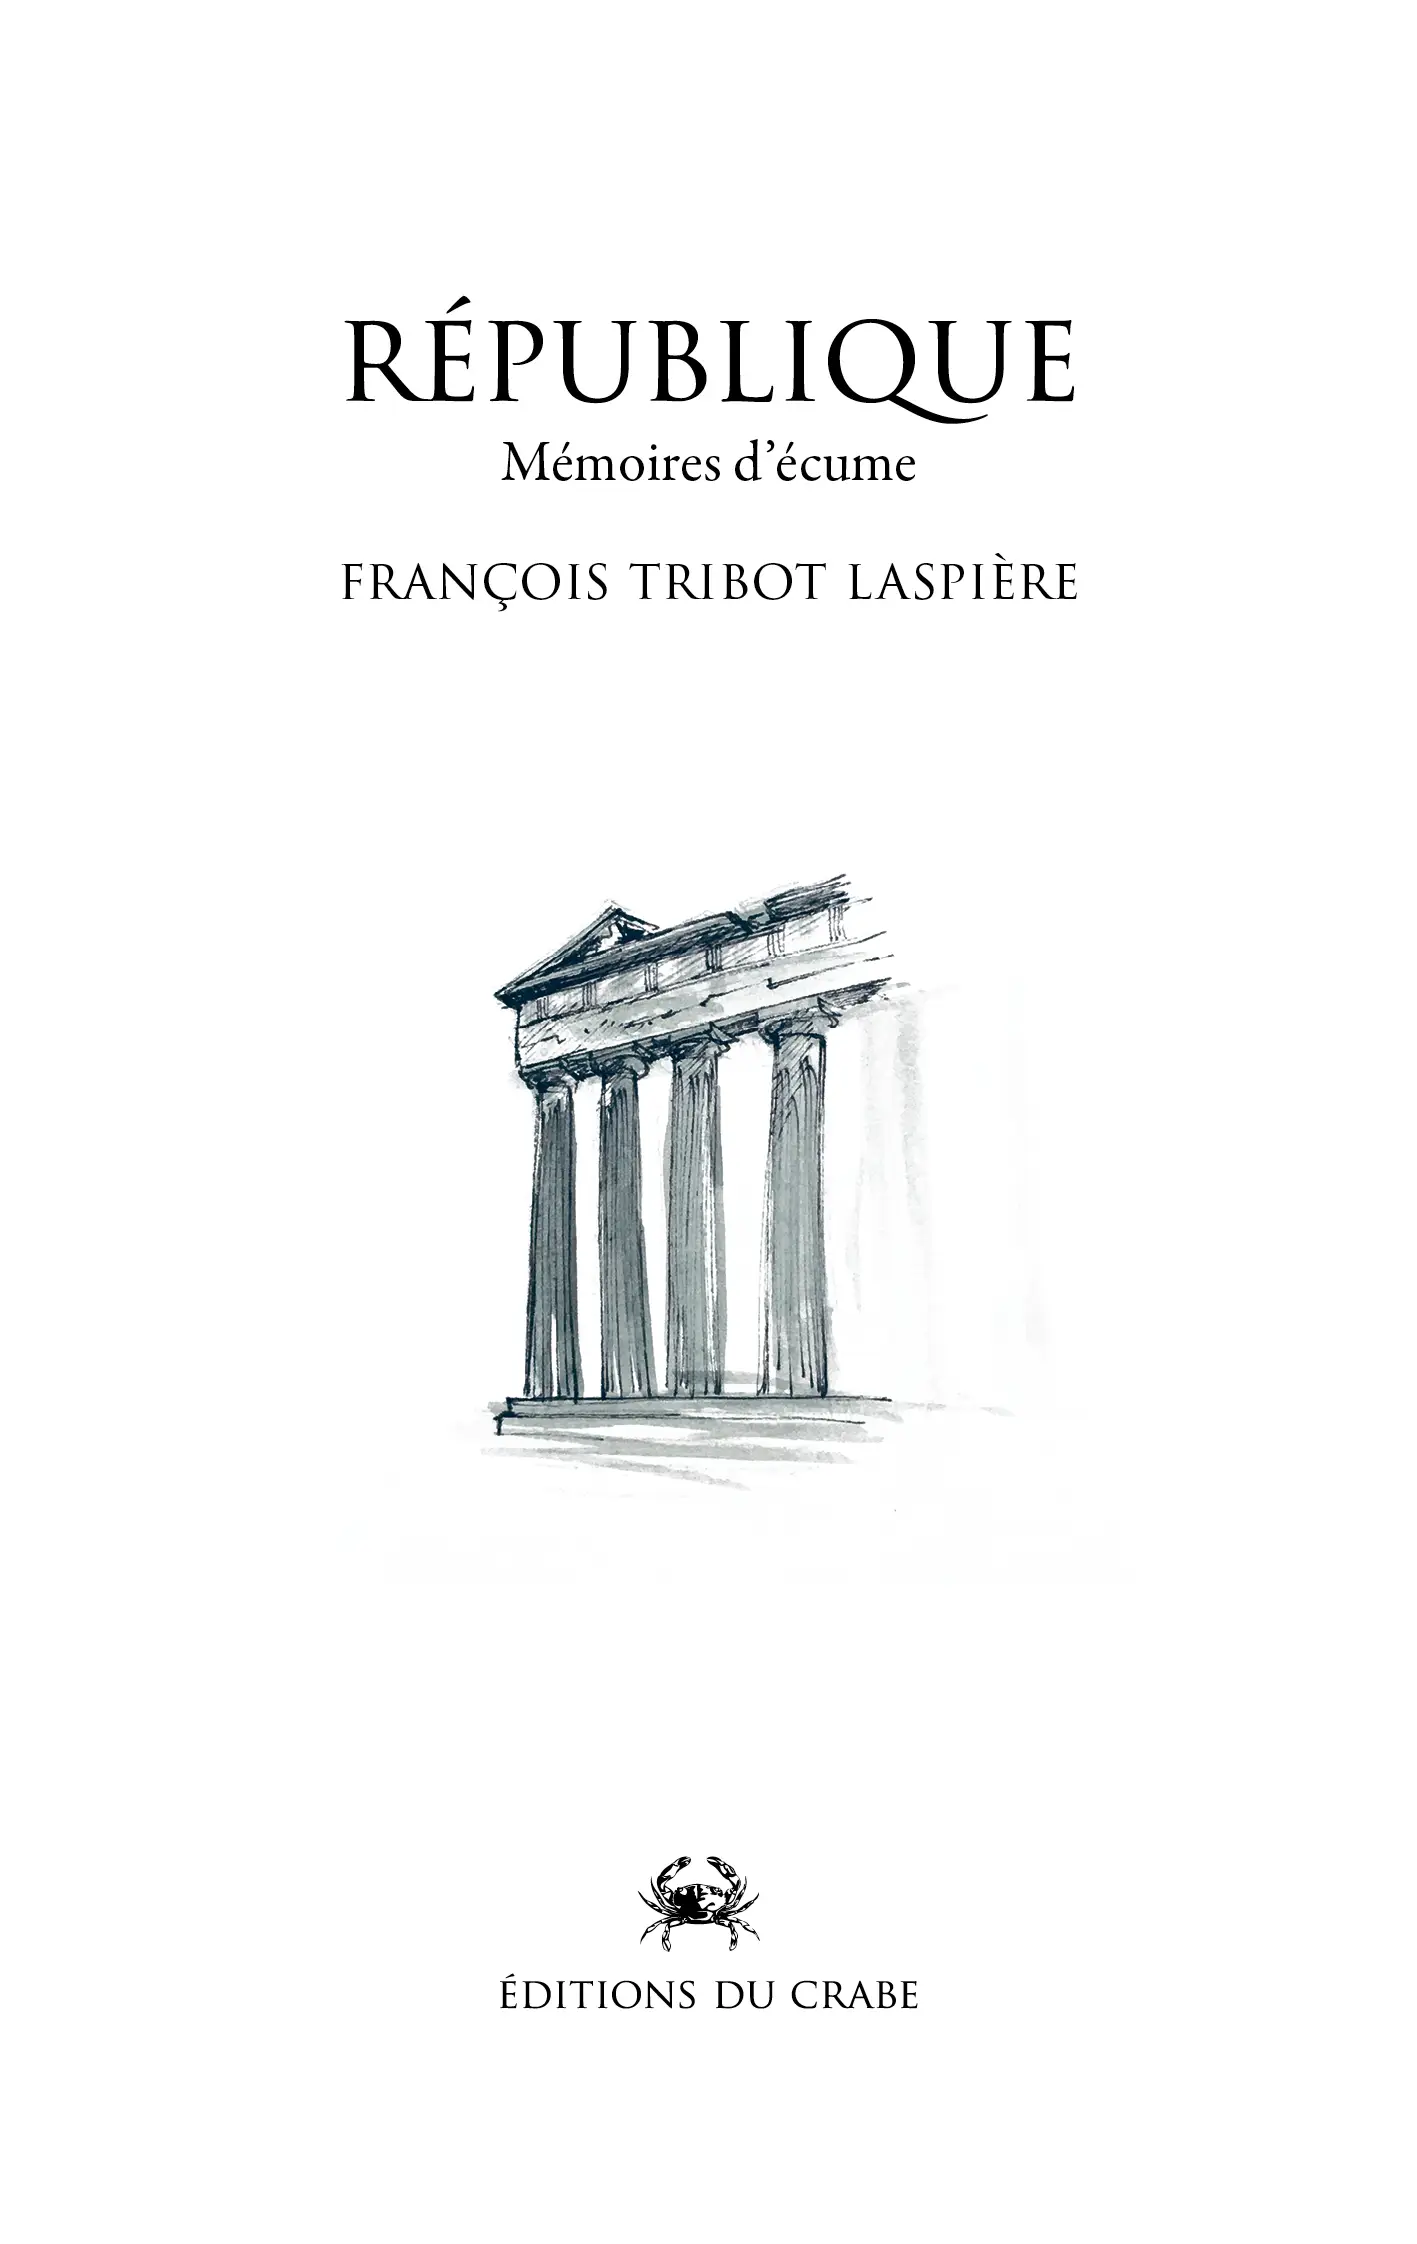 Couverture de l'ouvrage République écrit par François Tribot Laspière.